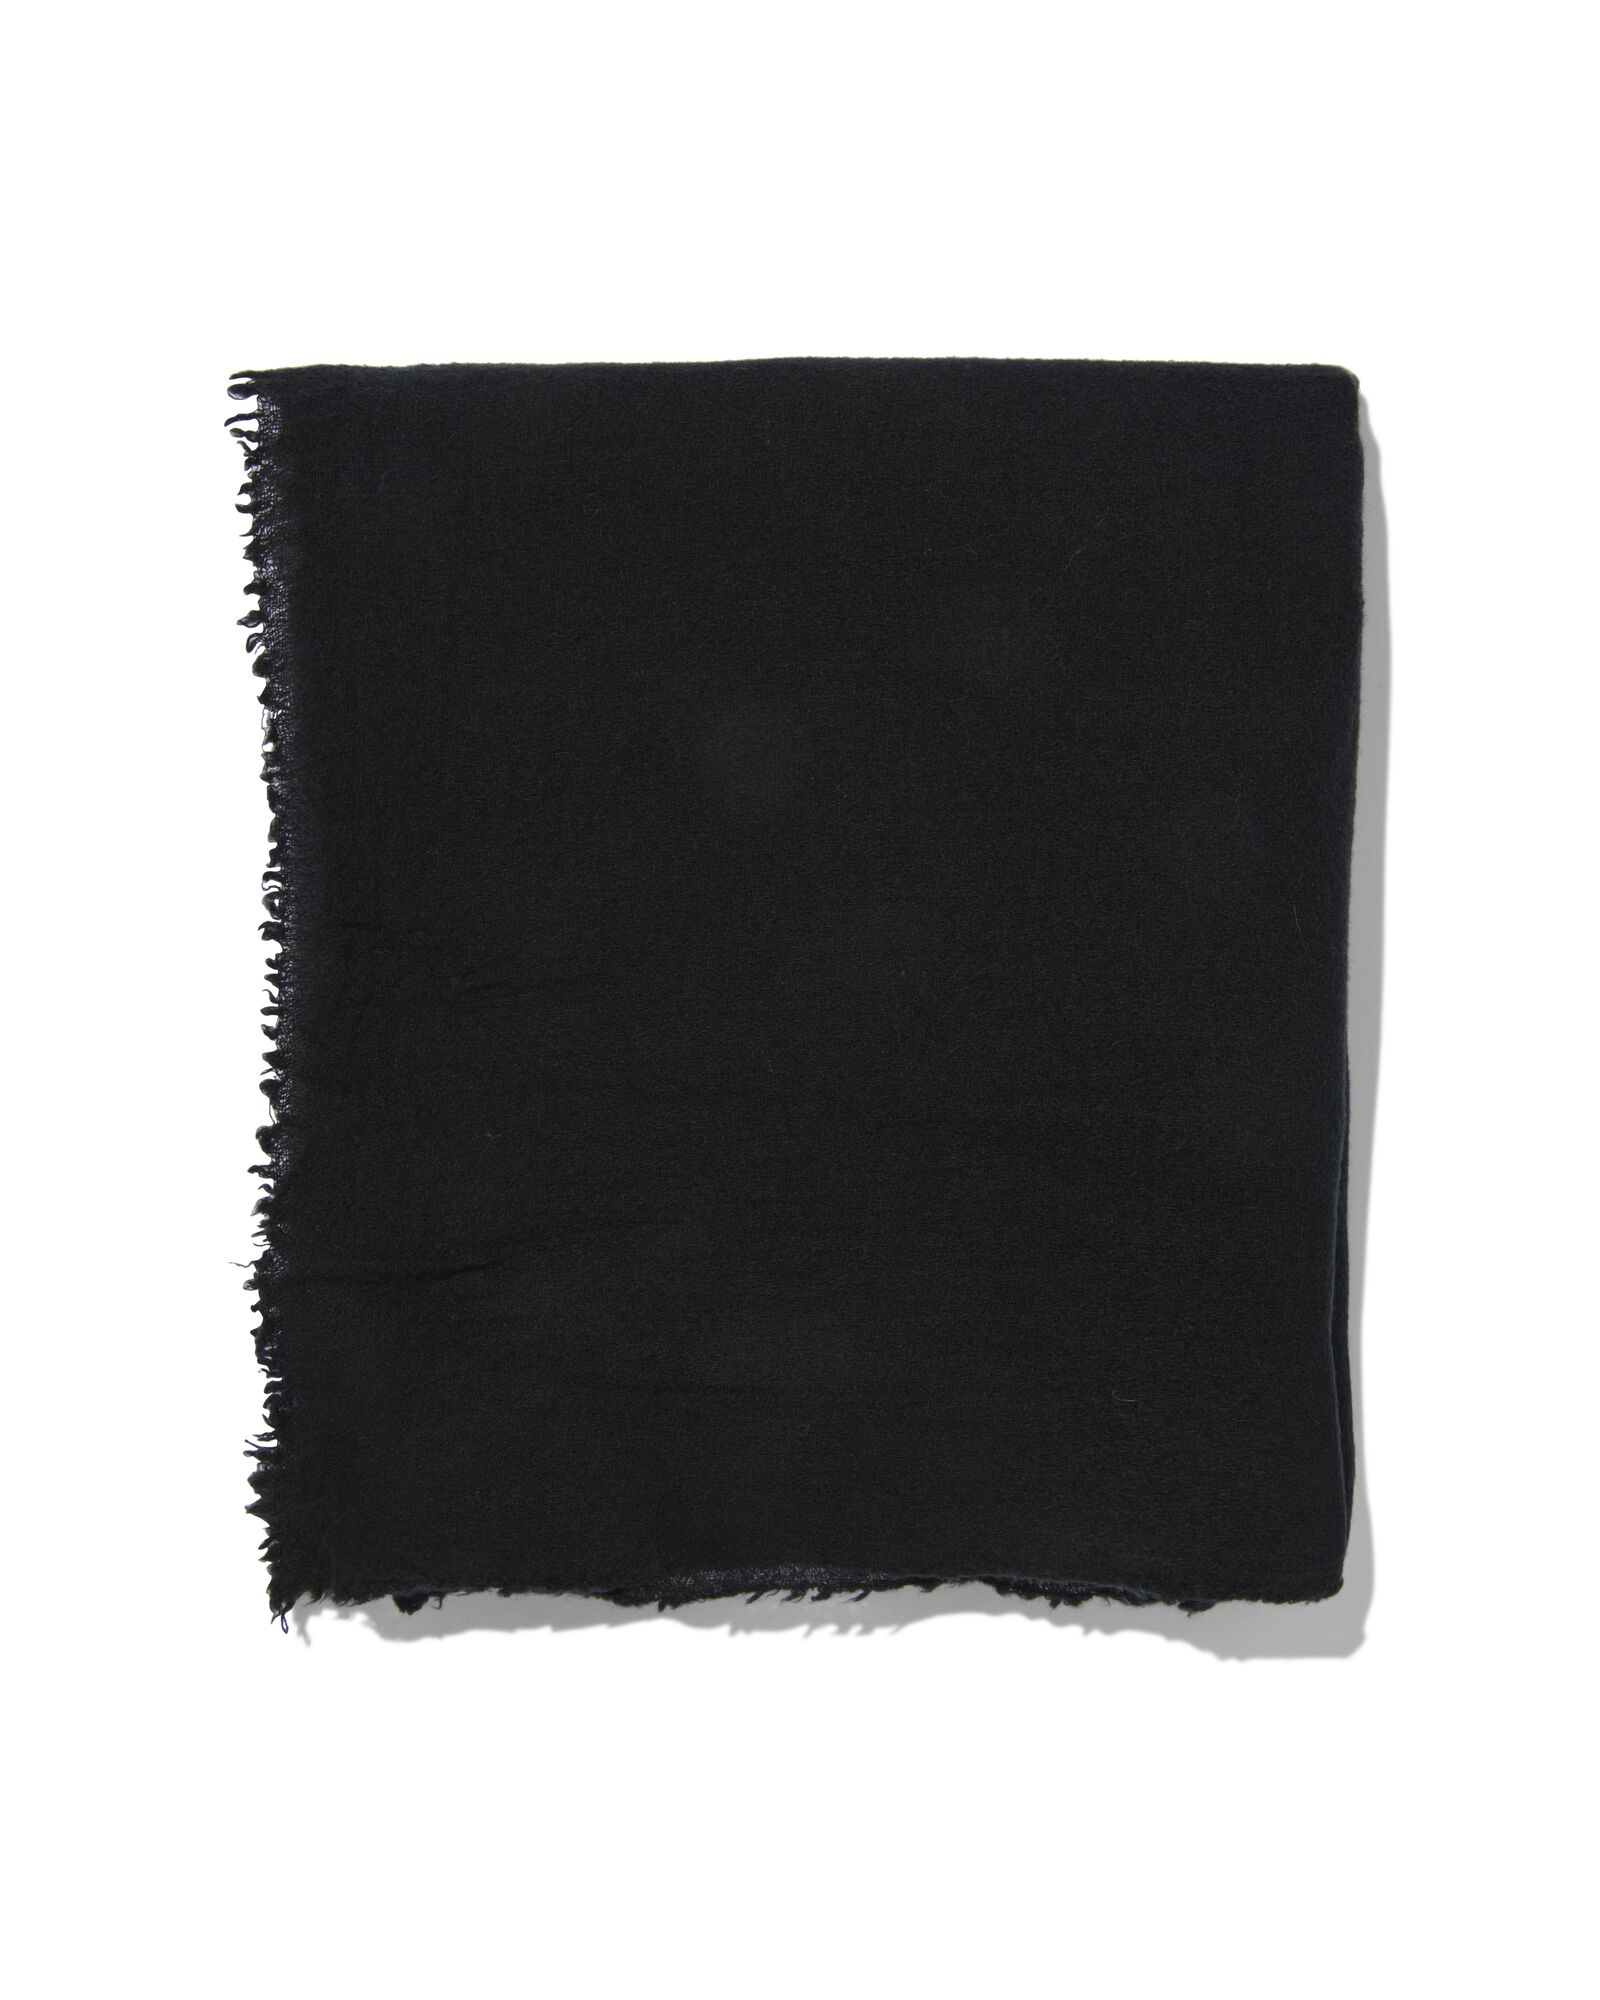 dames sjaal met wol 200x60 zwart - 1790025 - HEMA